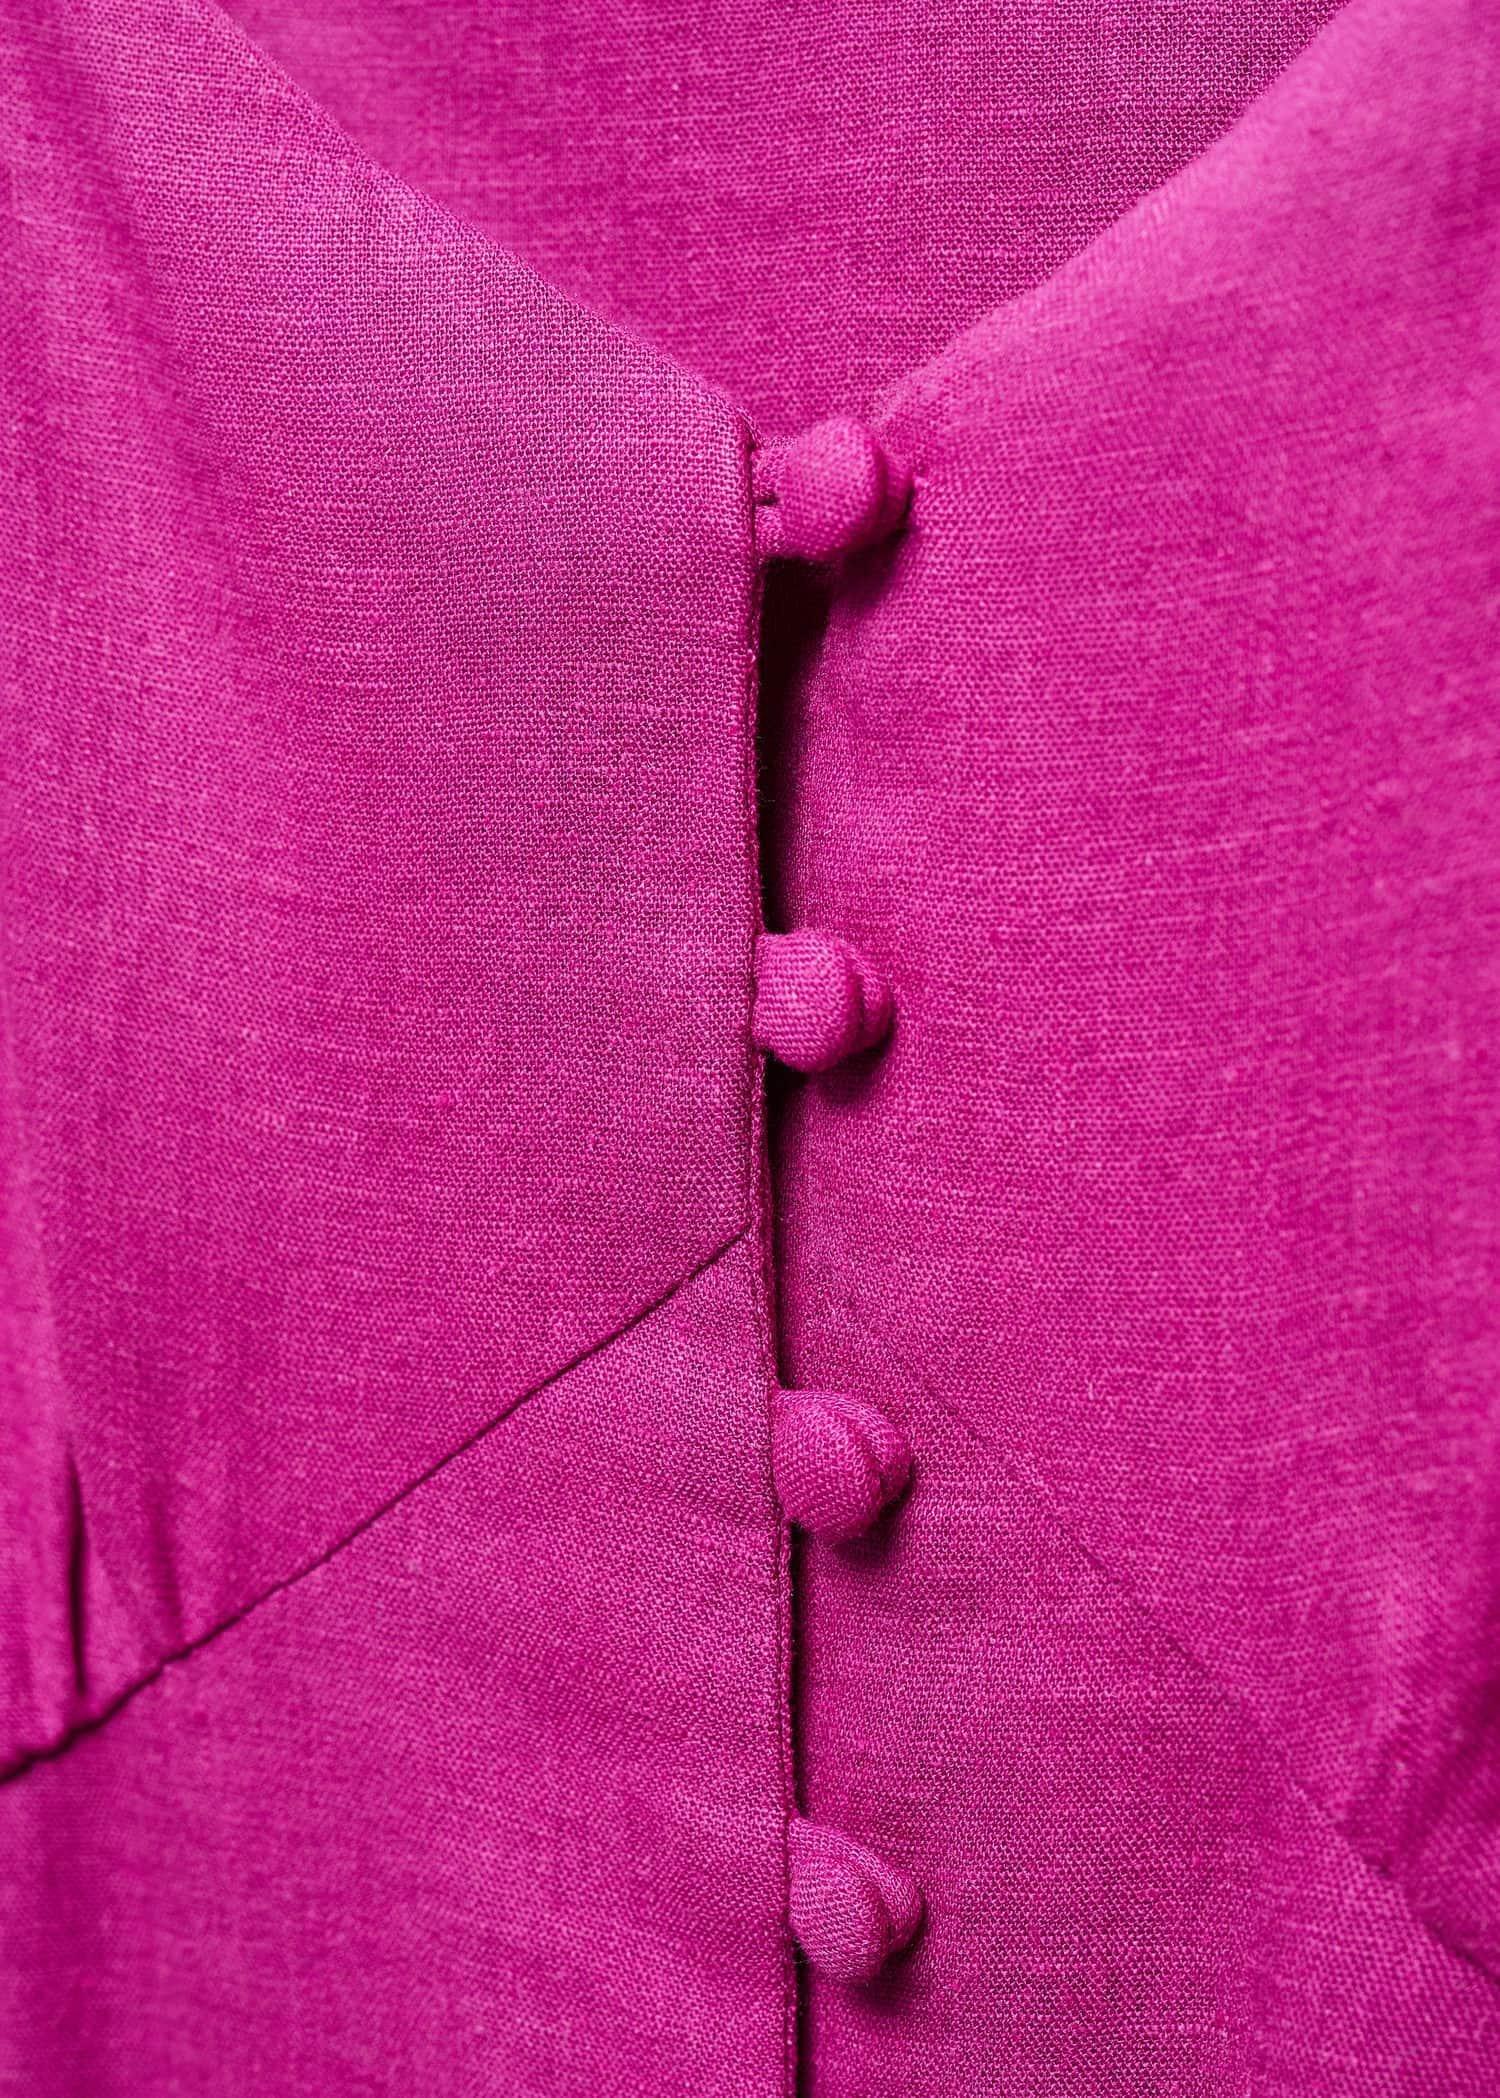 Mango - Purple Buttoned Linen-Blend Dress